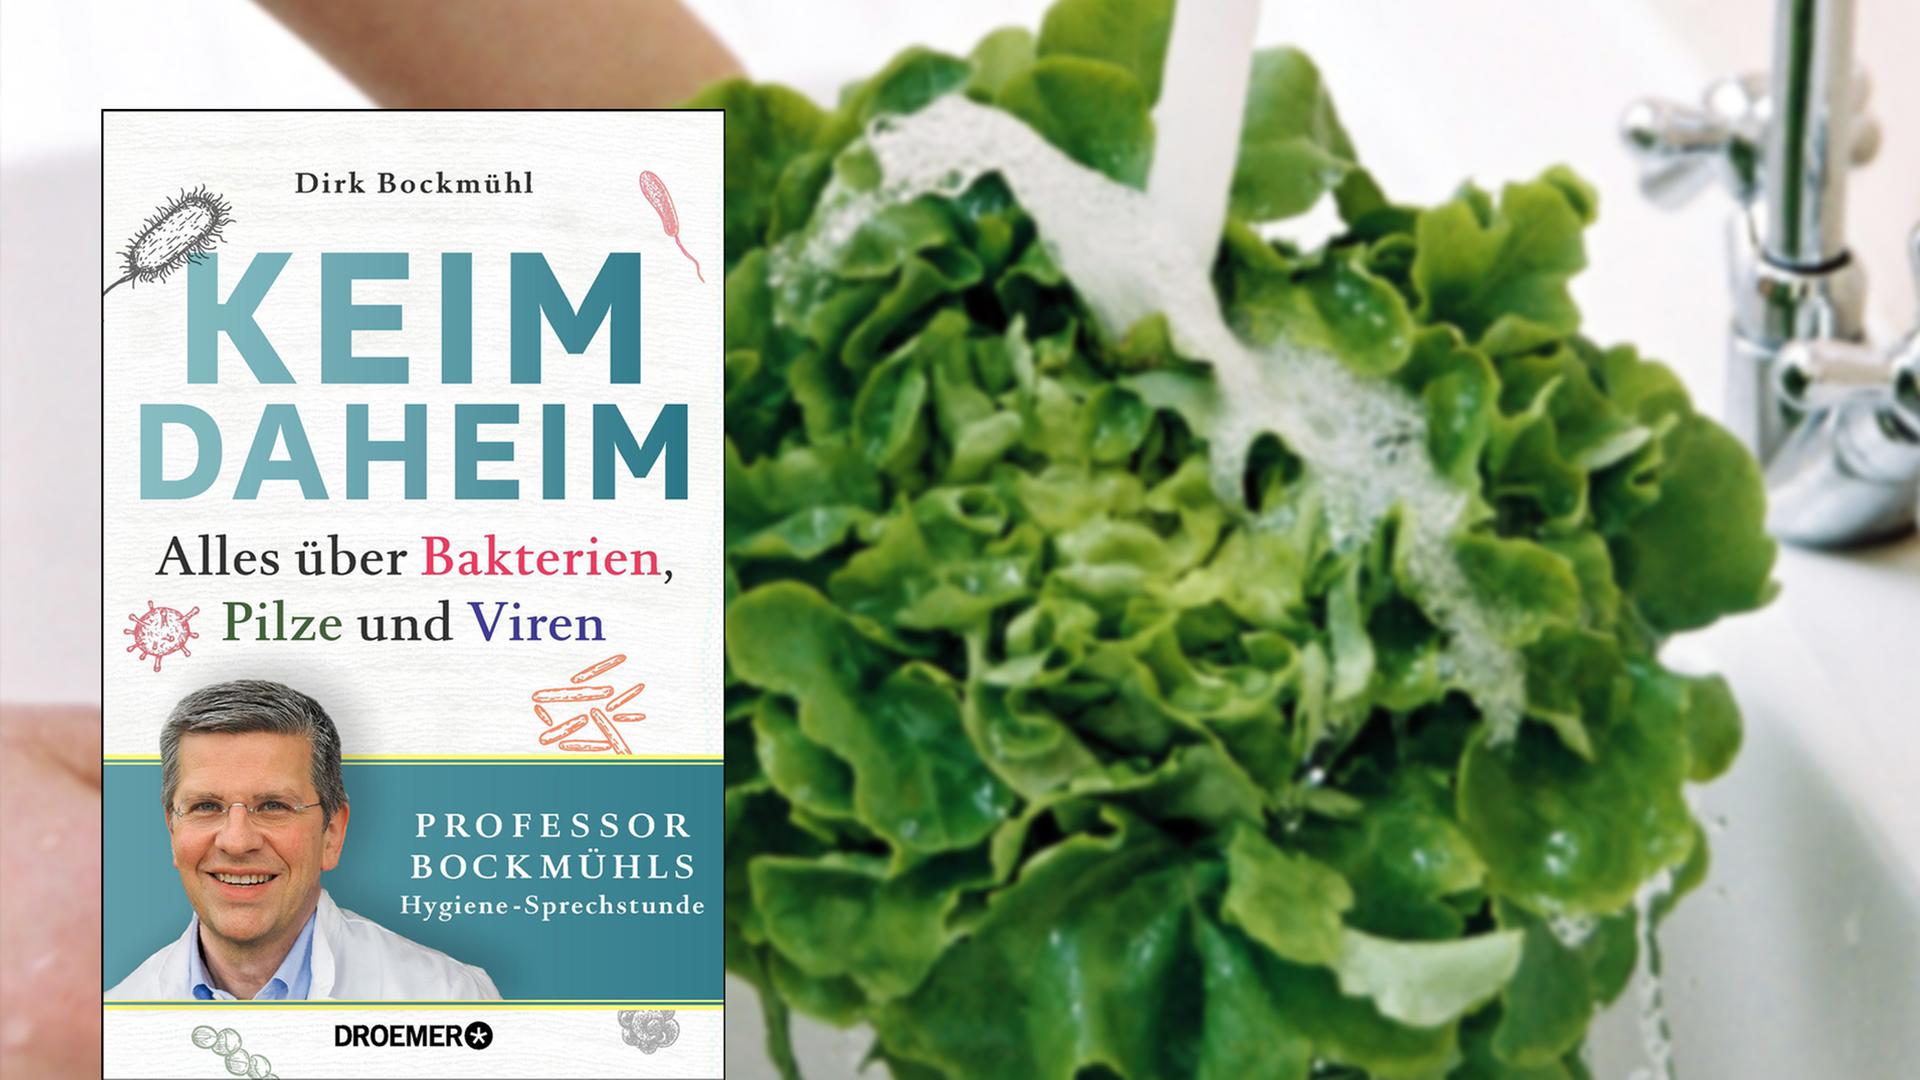 Cover von Dirk Bockmühl "Keim daheim", im Hintergrund wird ein Salat gewaschen